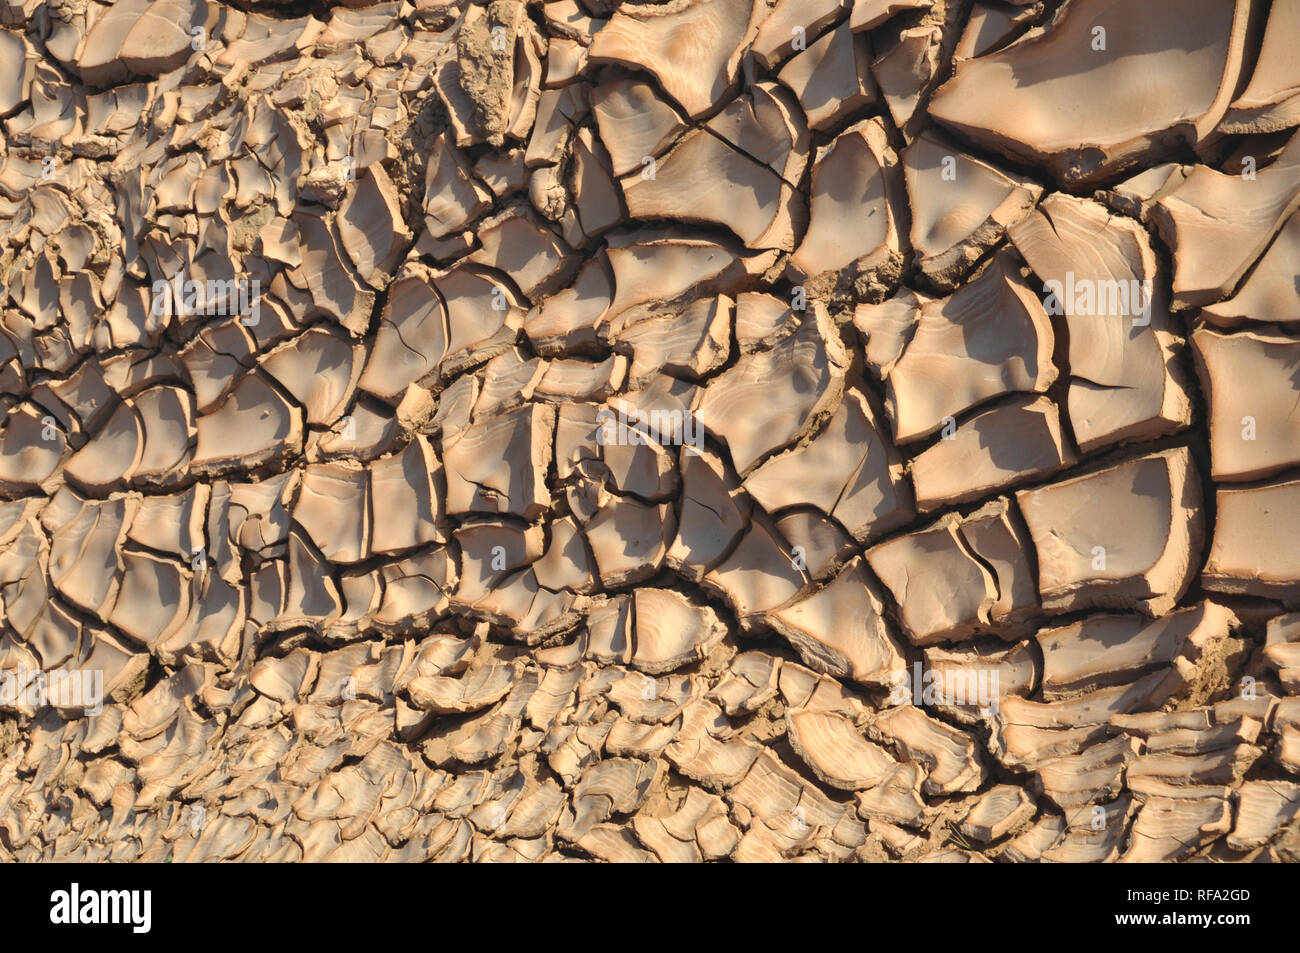 Les zones arides, assoiffées, sol desséché dans les déserts d'Oman créer les conditions de sécheresse. Banque D'Images